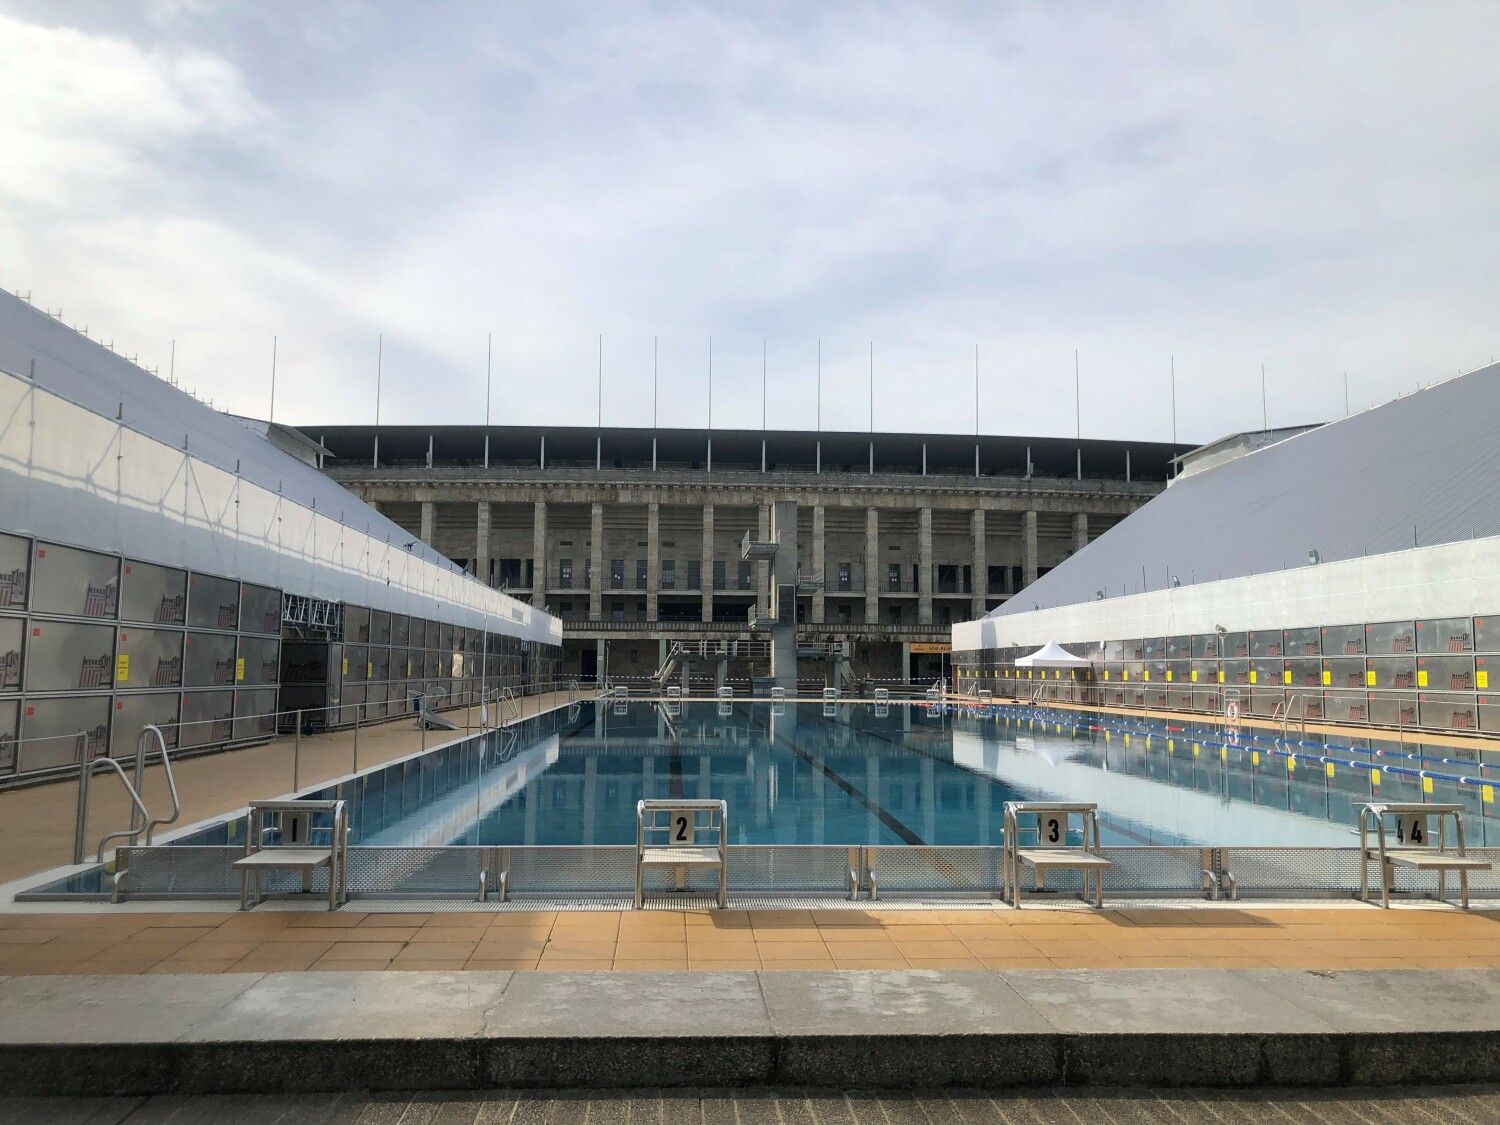 Das Sommerbad Olympiastadion mit Wetterschutzdächern überdeckten Tribünen.